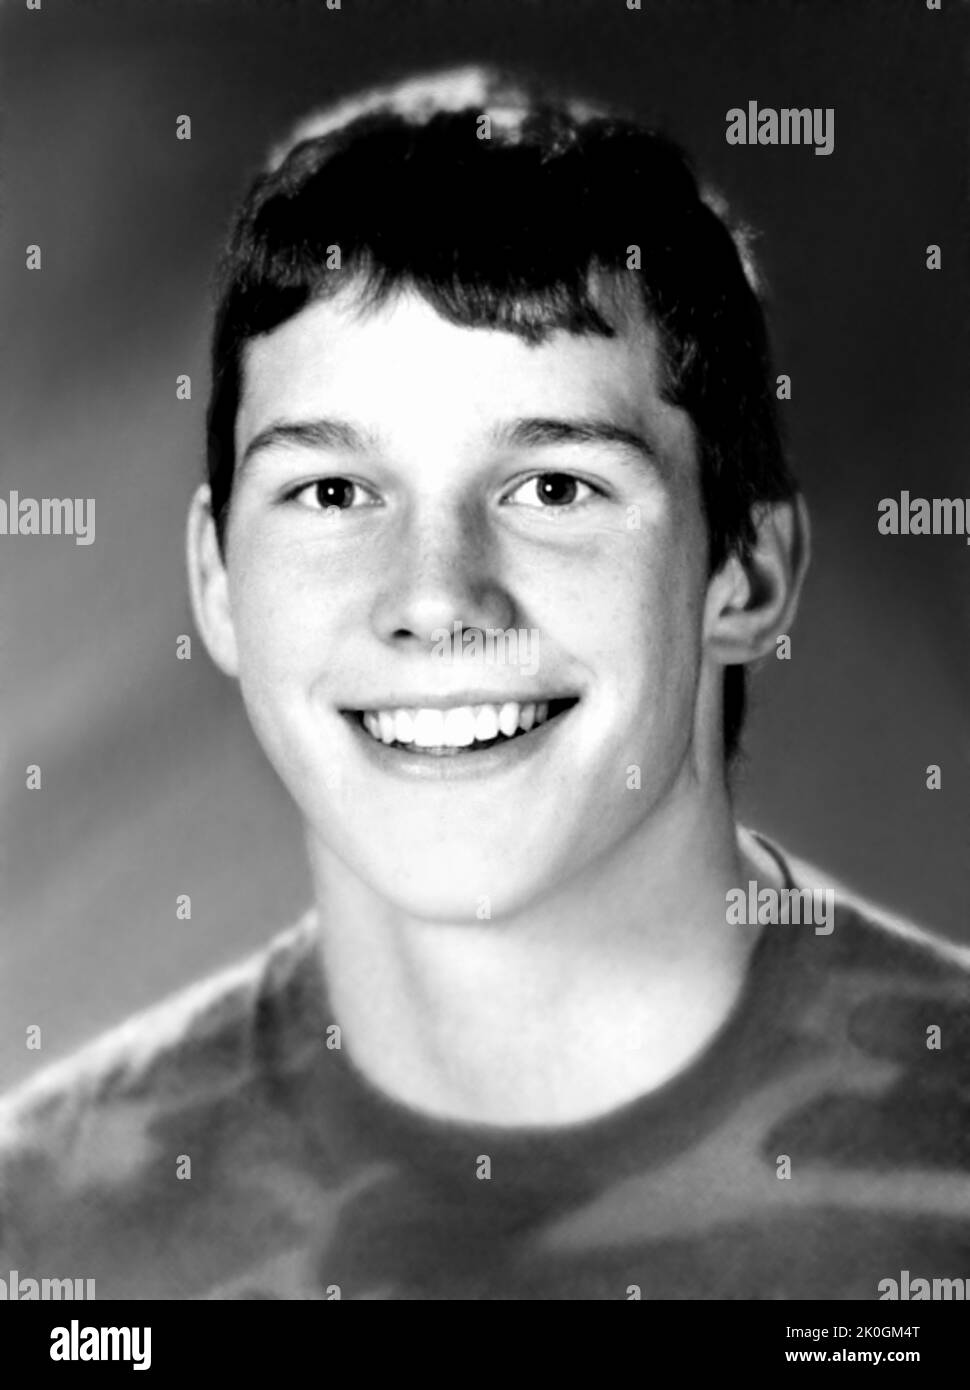 1996 c., USA : der gefeierte amerikanische Filmschauspieler CHRIS PRATT ( geboren am 21. juni 1979 ), als ein kleiner Junge im Alter von 17 Jahren war. Unbekannter Fotograf aus dem High School Yearbook . - GESCHICHTE - FOTO STORICHE - ATTORE - FILM - KINO - SEX SYMBOL - personalità da TEENAGER - RAGAZZO - da giovane - Persönlichkeit Persönlichkeiten, als jung war - INFANZIA - KINDHEIT - Lächeln - sorriso - PORTRÄT - RITRATTO --- ARCHIVIO GBB Stockfoto